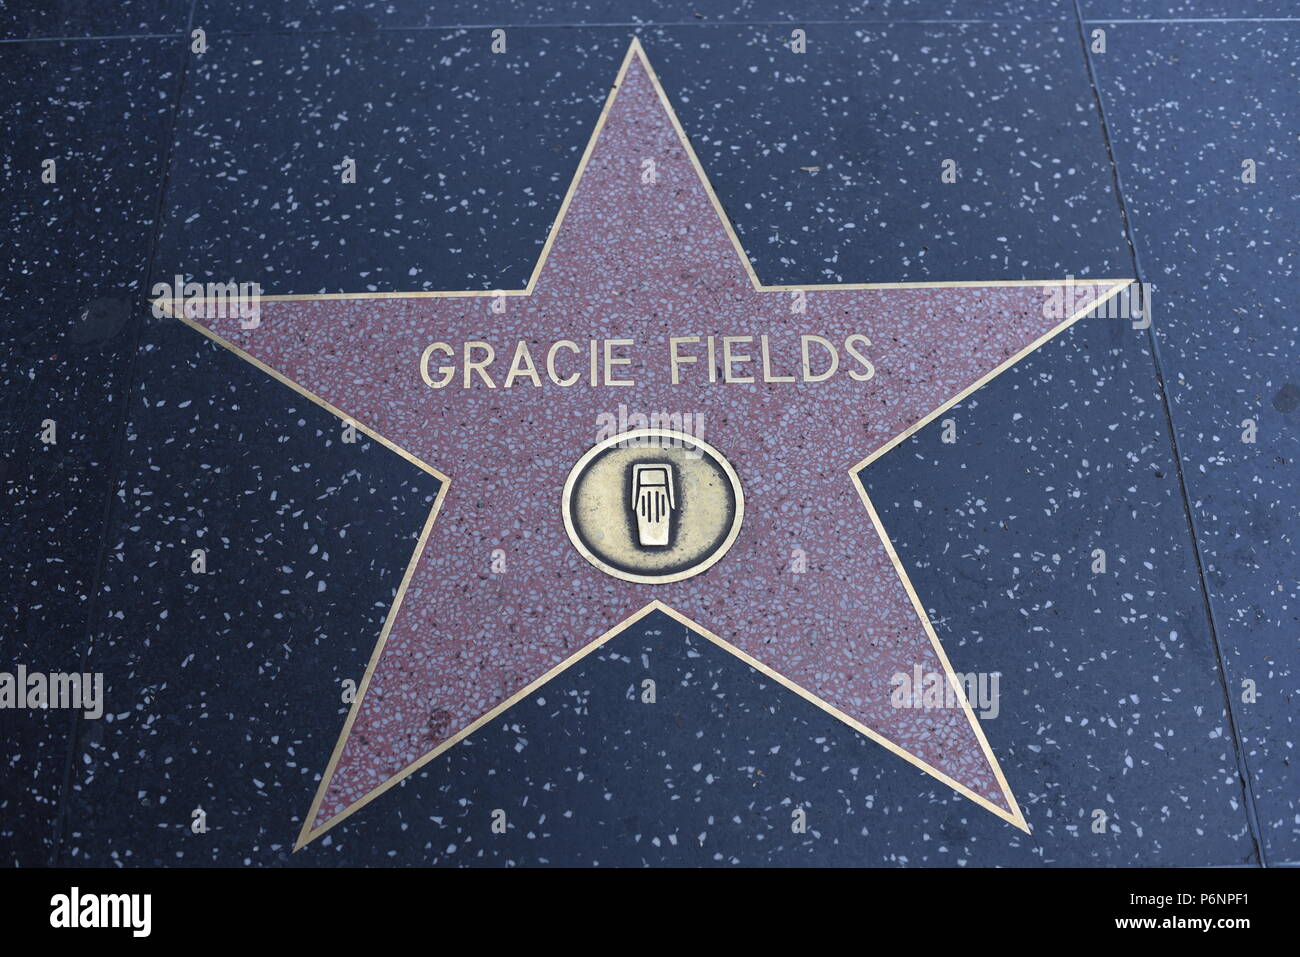 HOLLYWOOD, CA - 29 Giugno: Gracie Fields stella sulla Hollywood Walk of Fame in Hollywood, la California il 29 giugno 2018. Foto Stock